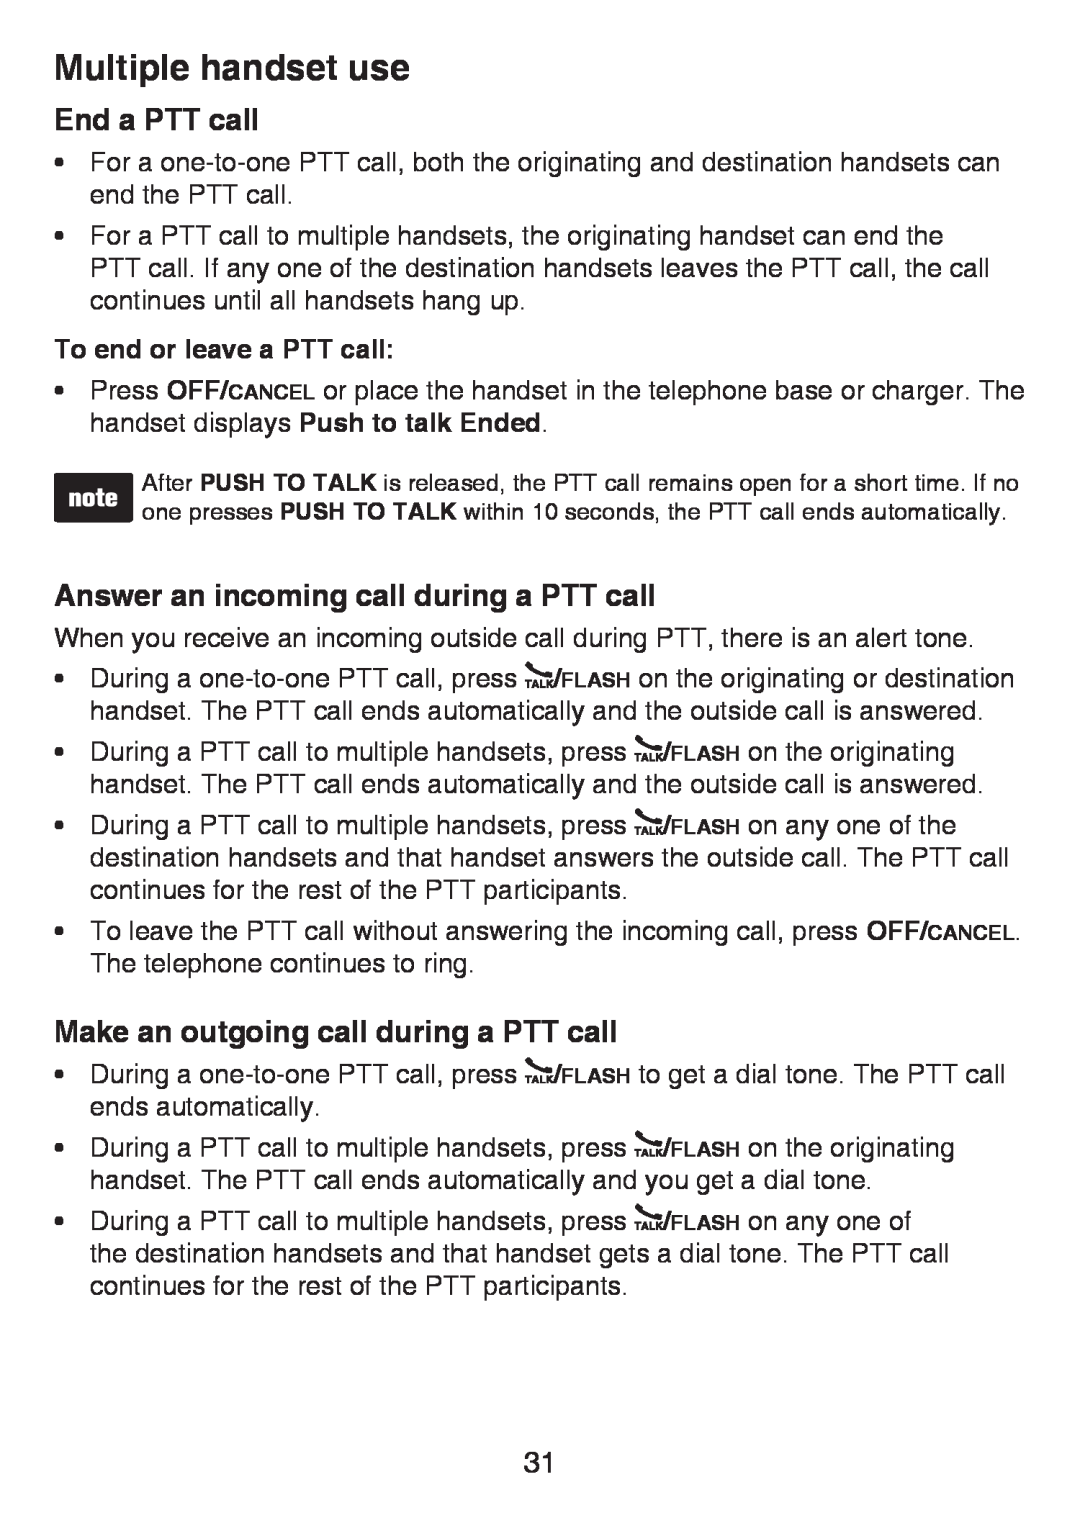 VTech LS6425-2 End a PTT call, Answer an incoming call during a PTT call, Make an outgoing call during a PTT call 